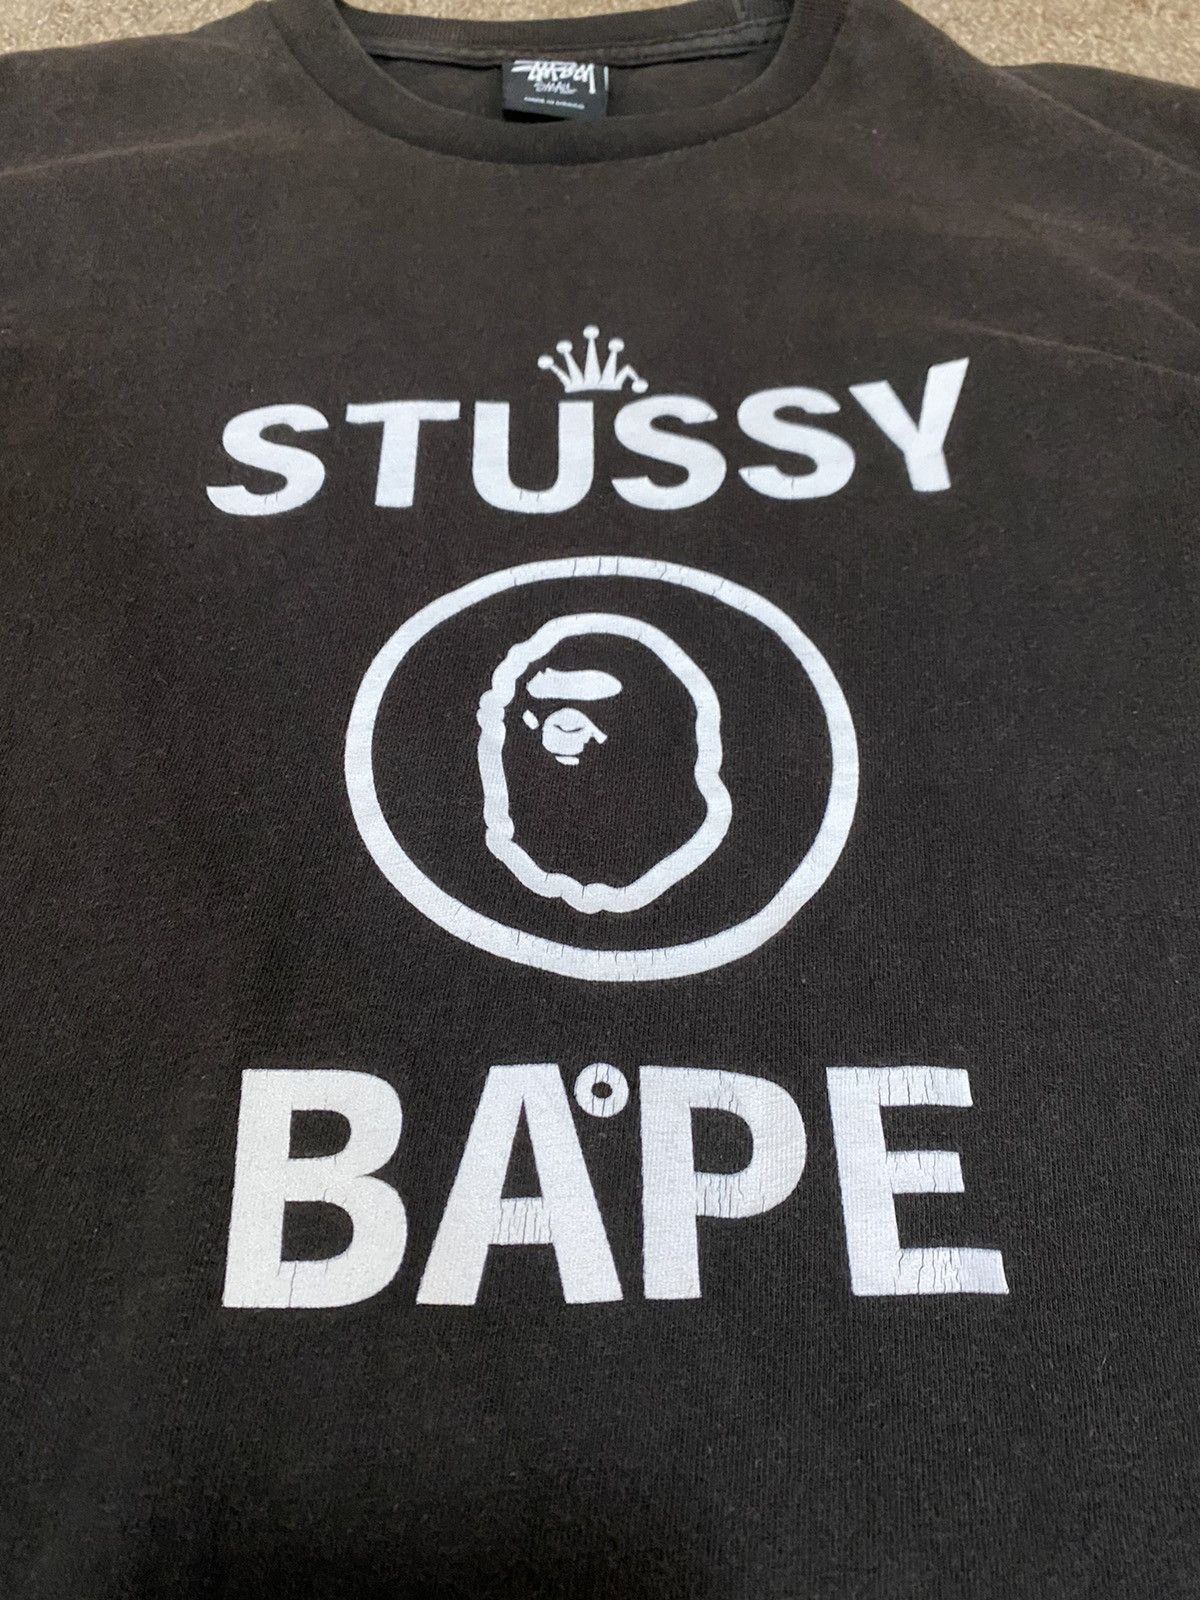 Bape Stussy X Bape First Collab T Shirt Men sz S Vintage 2010 Size US S / EU 44-46 / 1 - 2 Preview